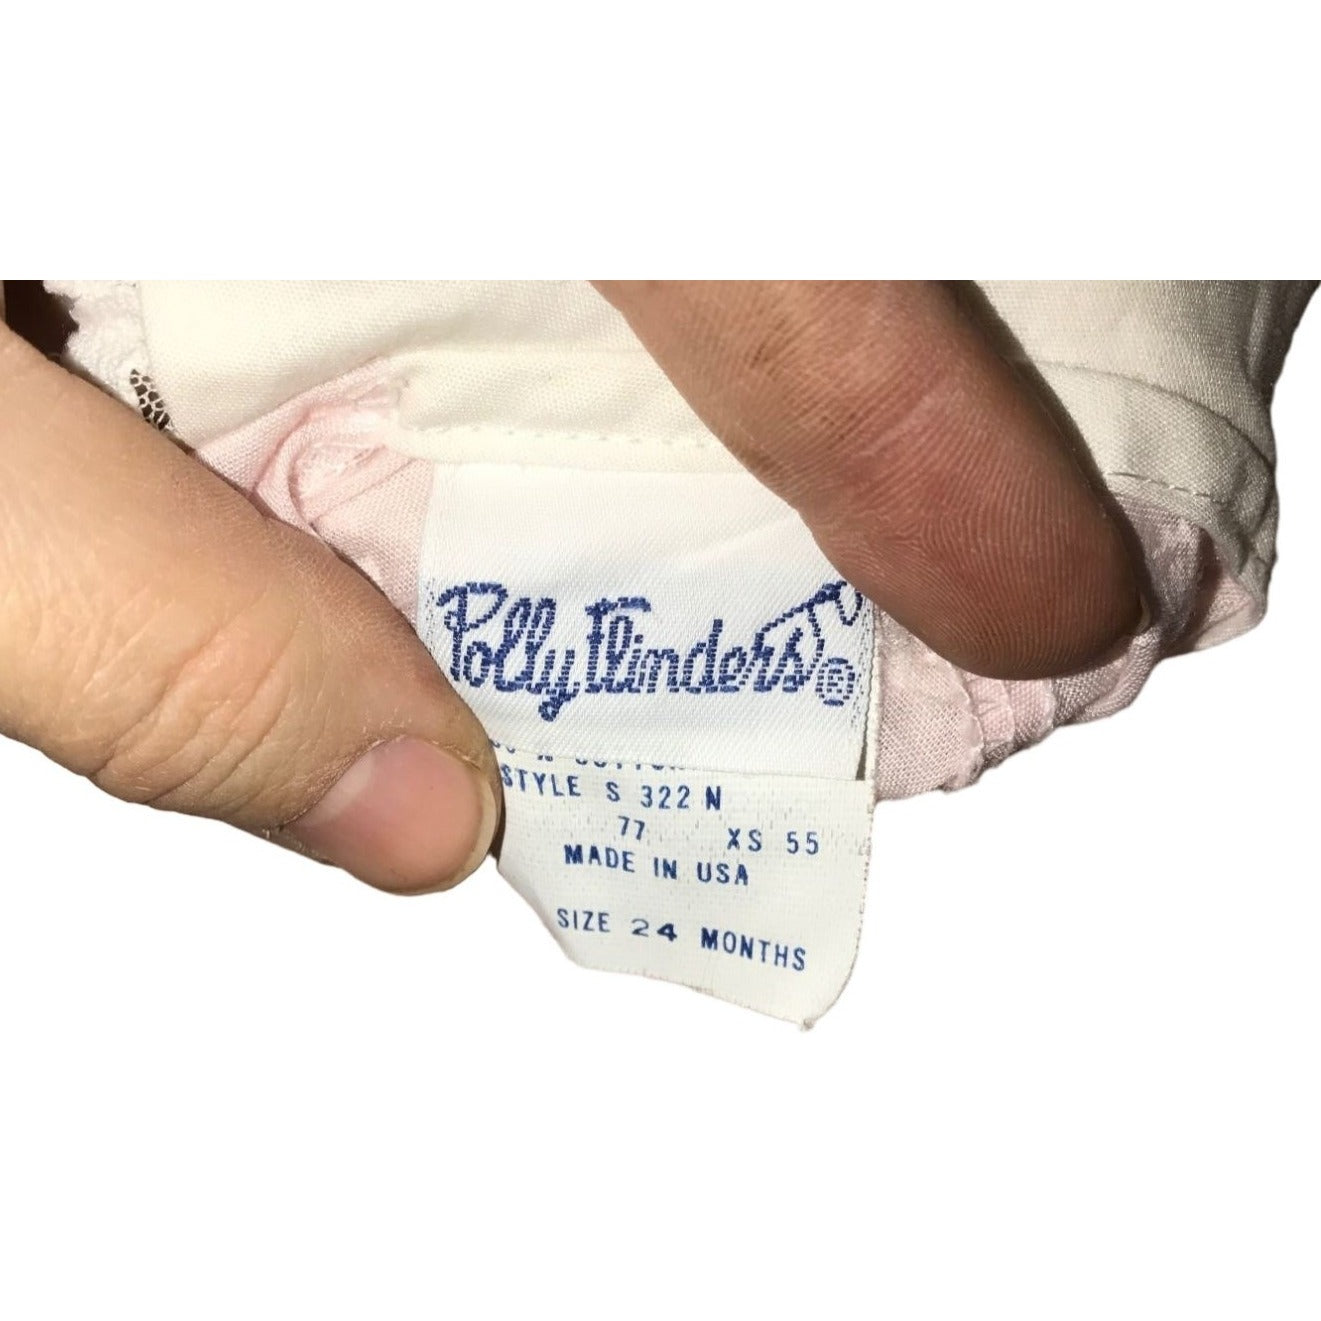 Polly Flinders,Polly Flinders baby dresses,Polly Flinders toddler